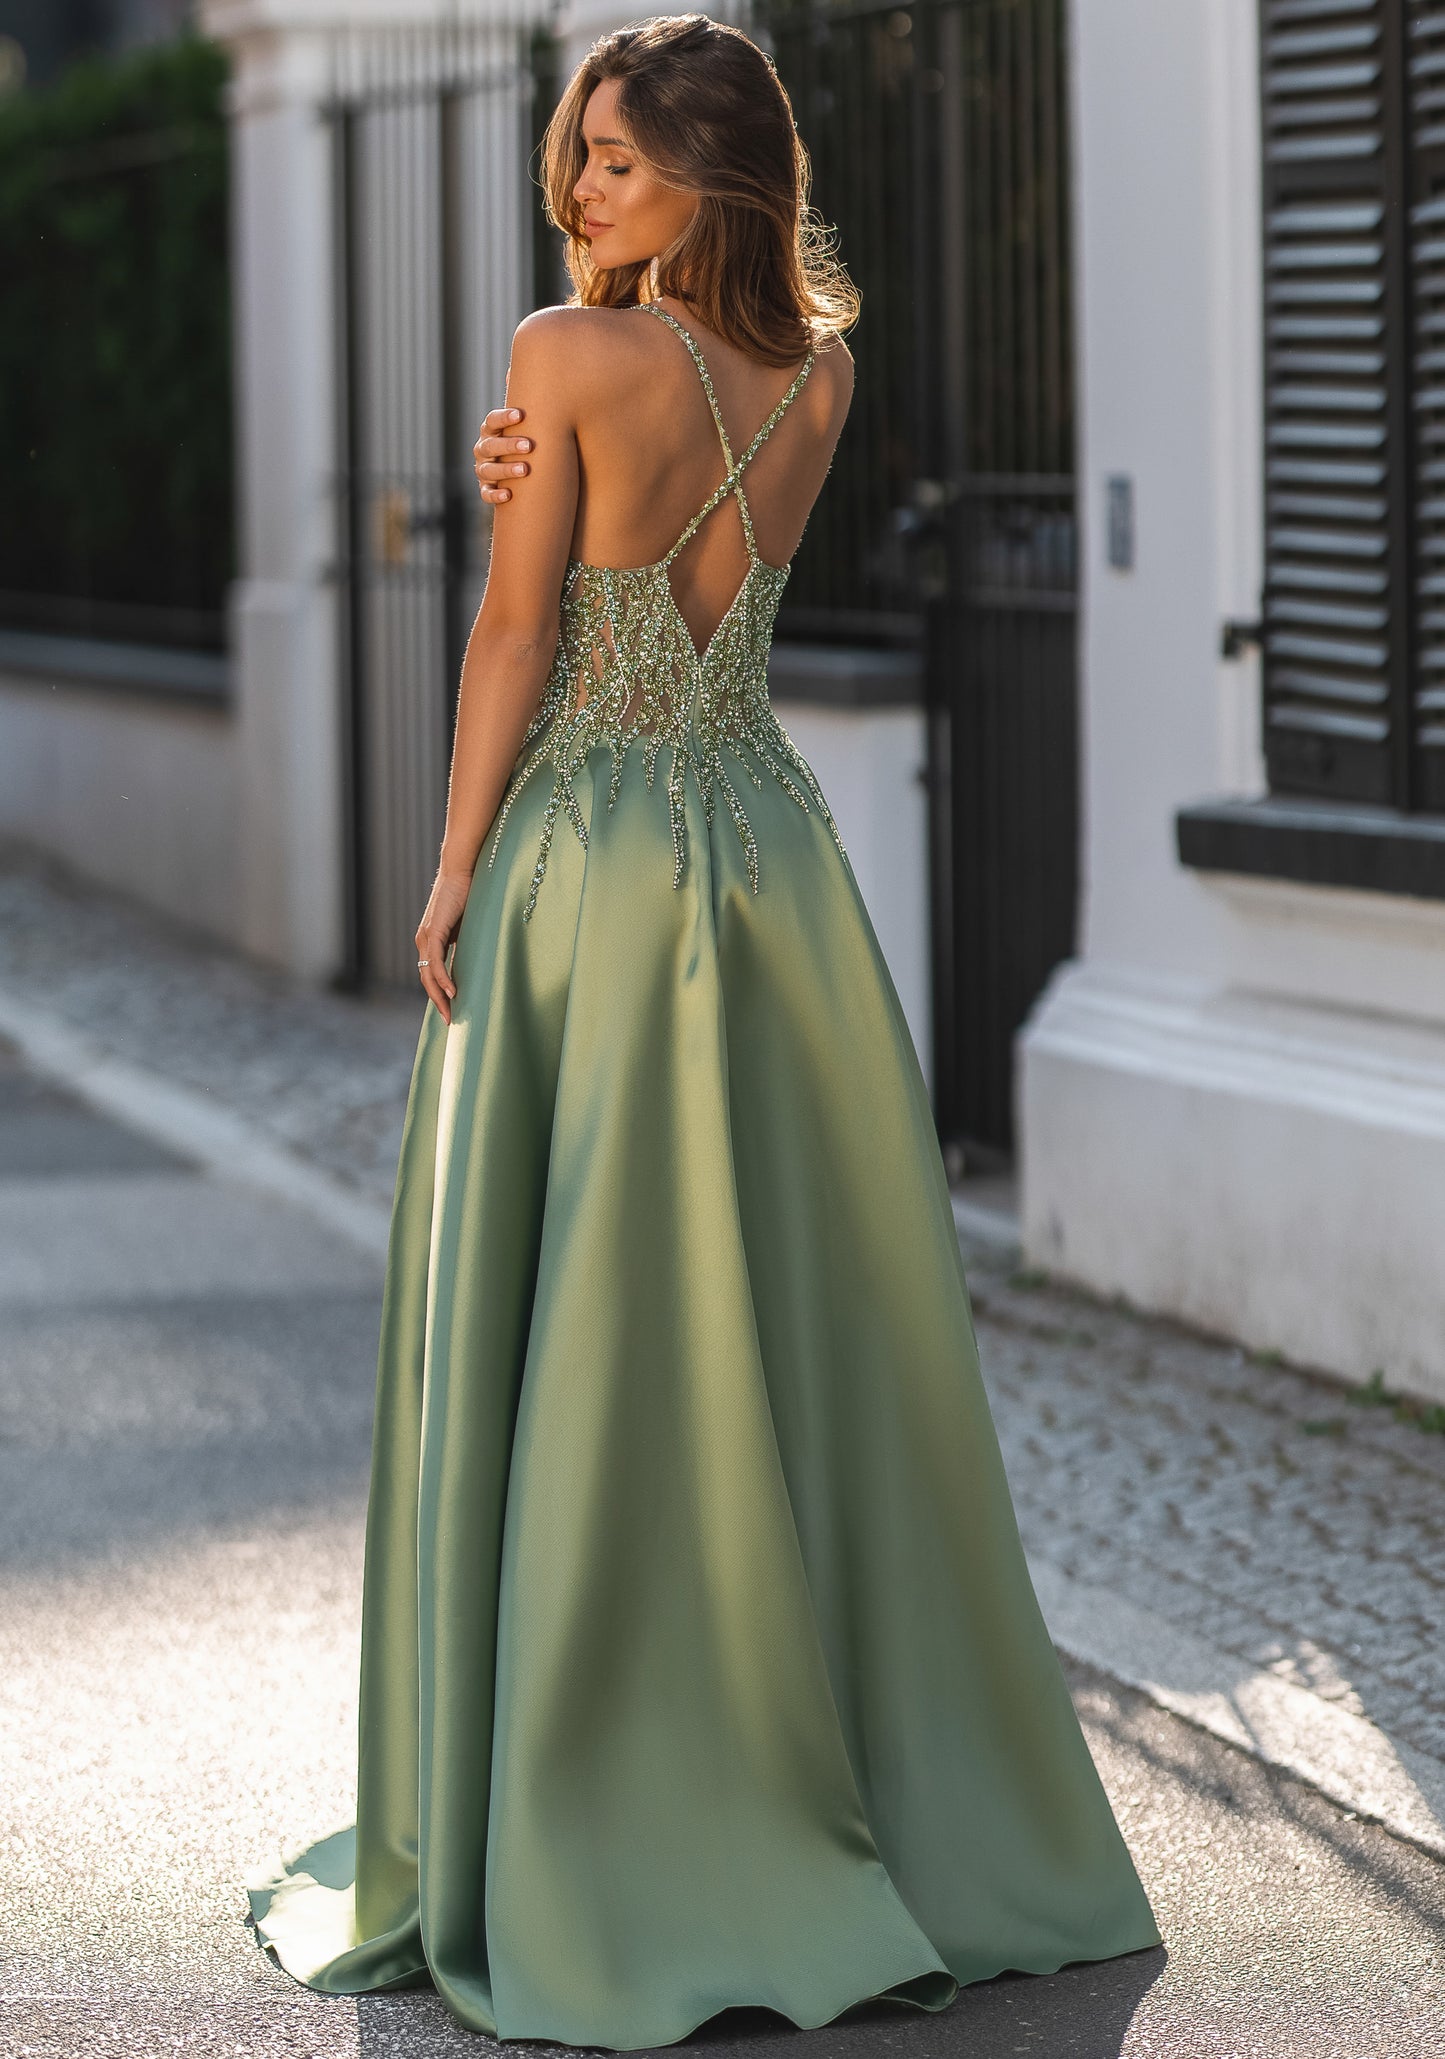 Green prom dress